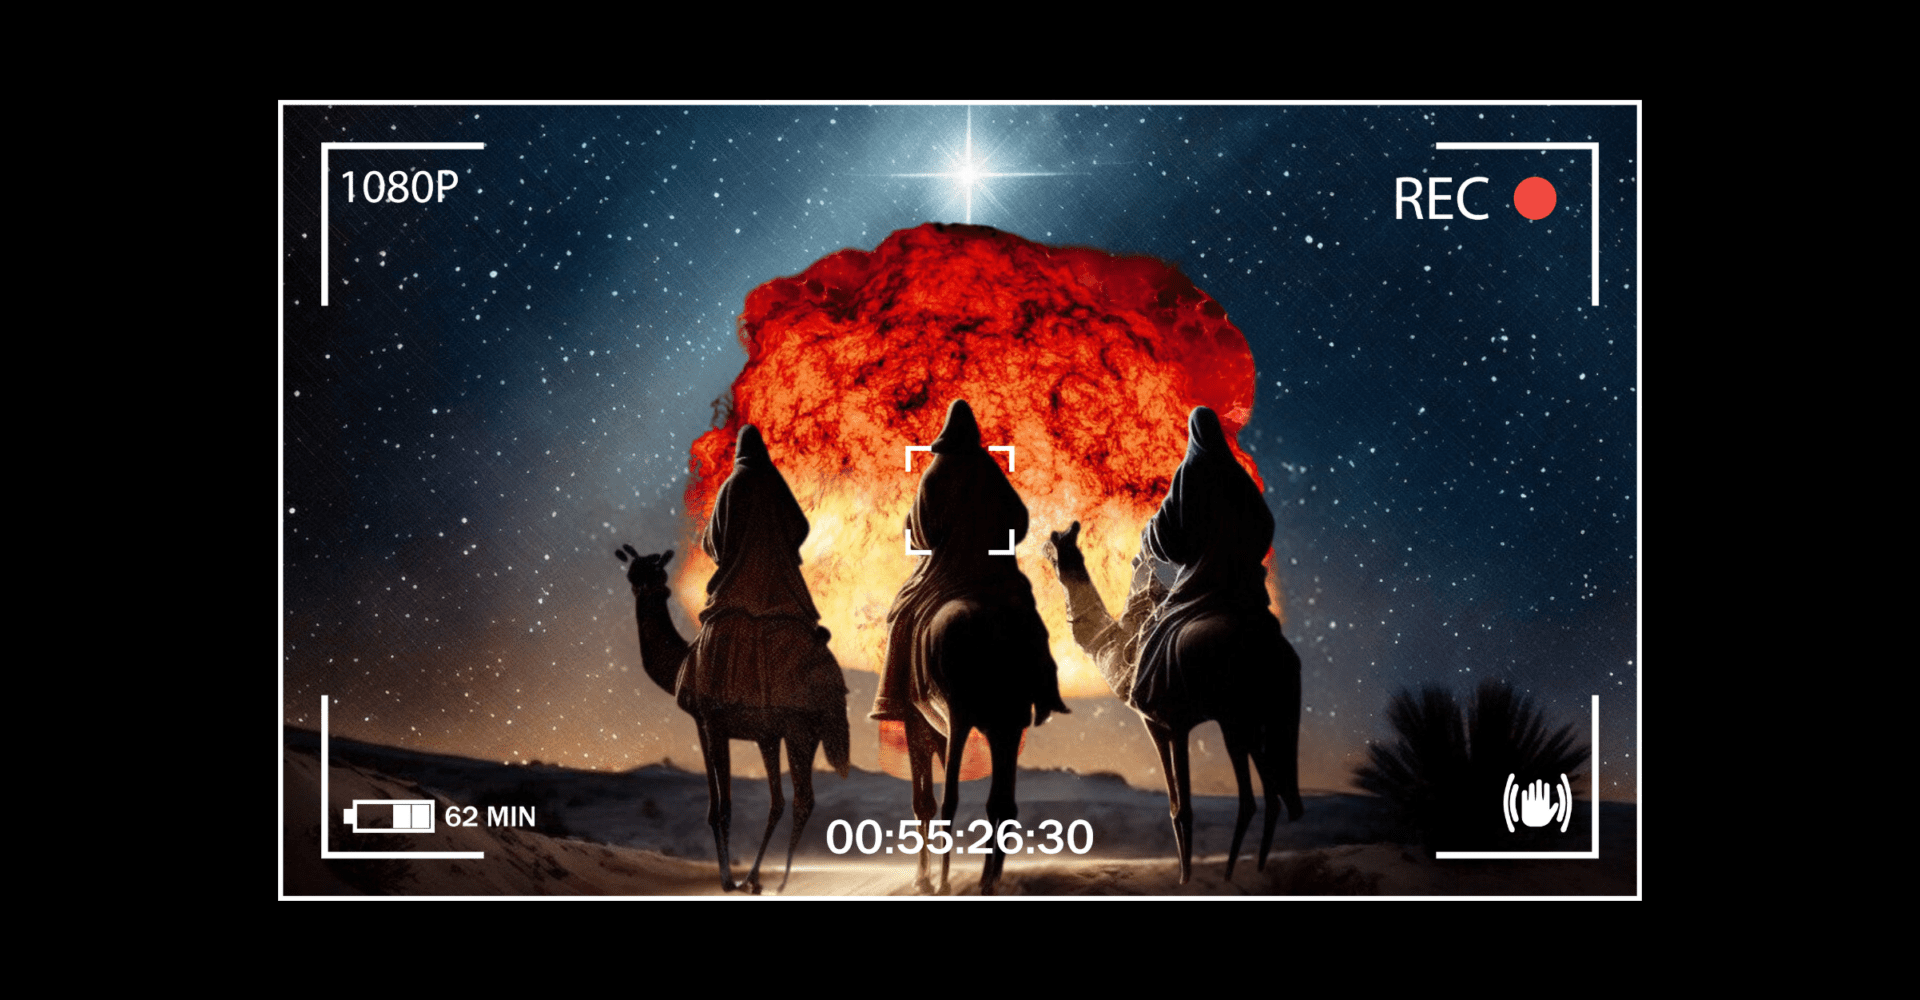 Trzech jeźdźców na wielbłądach podąża w stronę Sodomy i Gomory, a przed nimi unosi się ogień i pył po wybuchu bomby atomowej